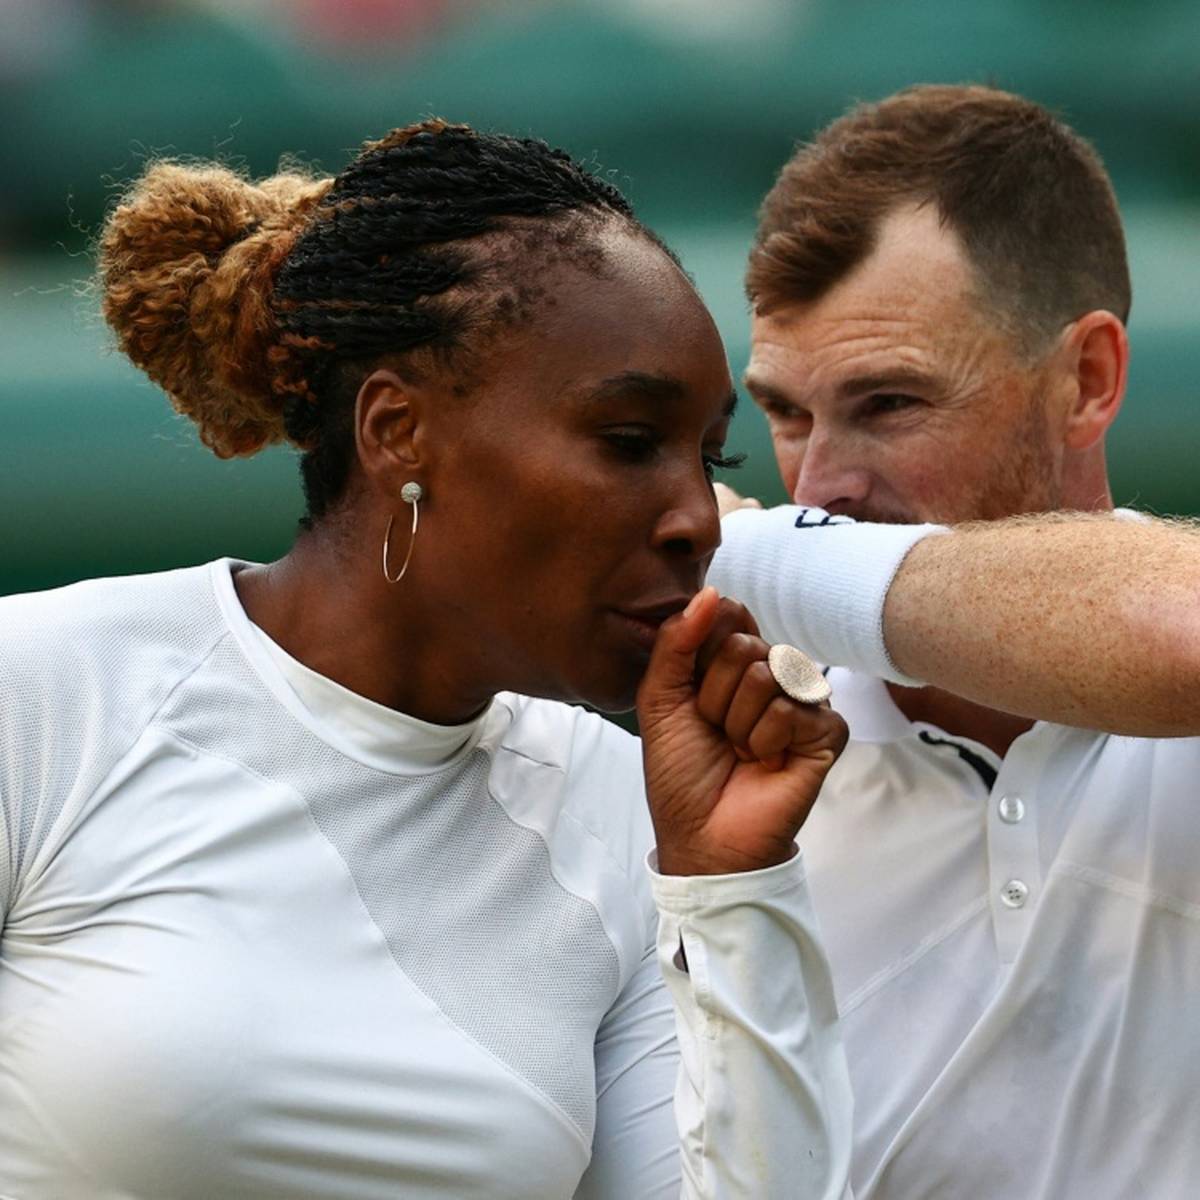 Die fünfmalige Einzel-Siegerin Venus Williams hat im Mixed-Wettbewerb von Wimbledon gemeinsam mit Jamie Murray das Achtelfinale erreicht.